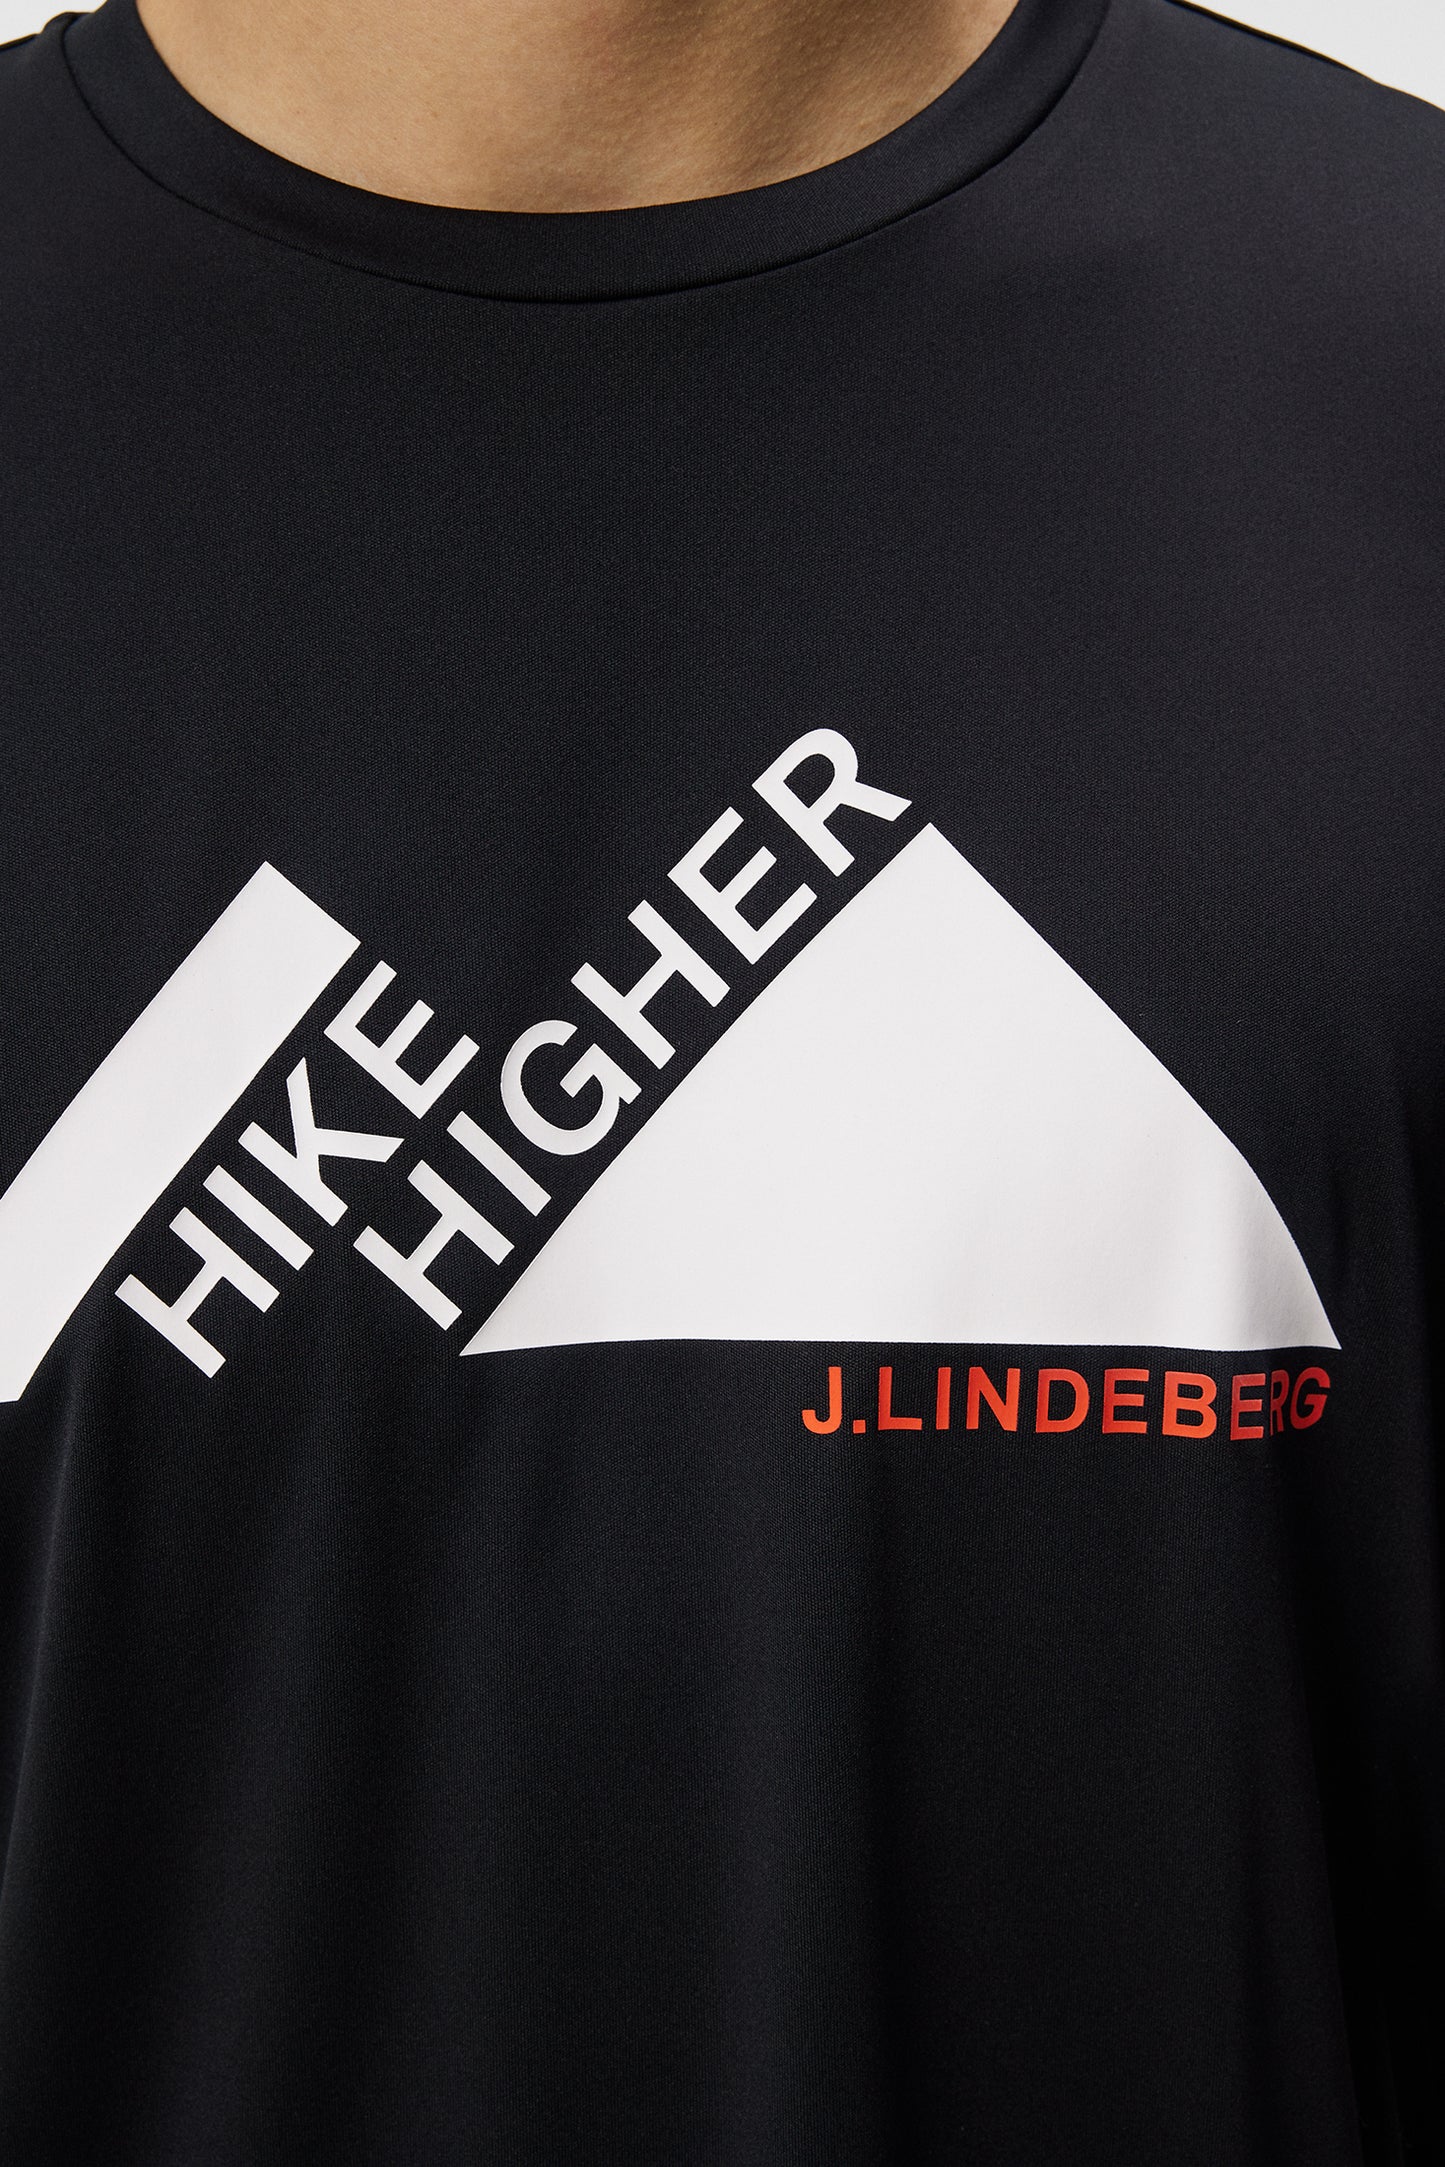 Andreas T-shirt / Black – J.Lindeberg